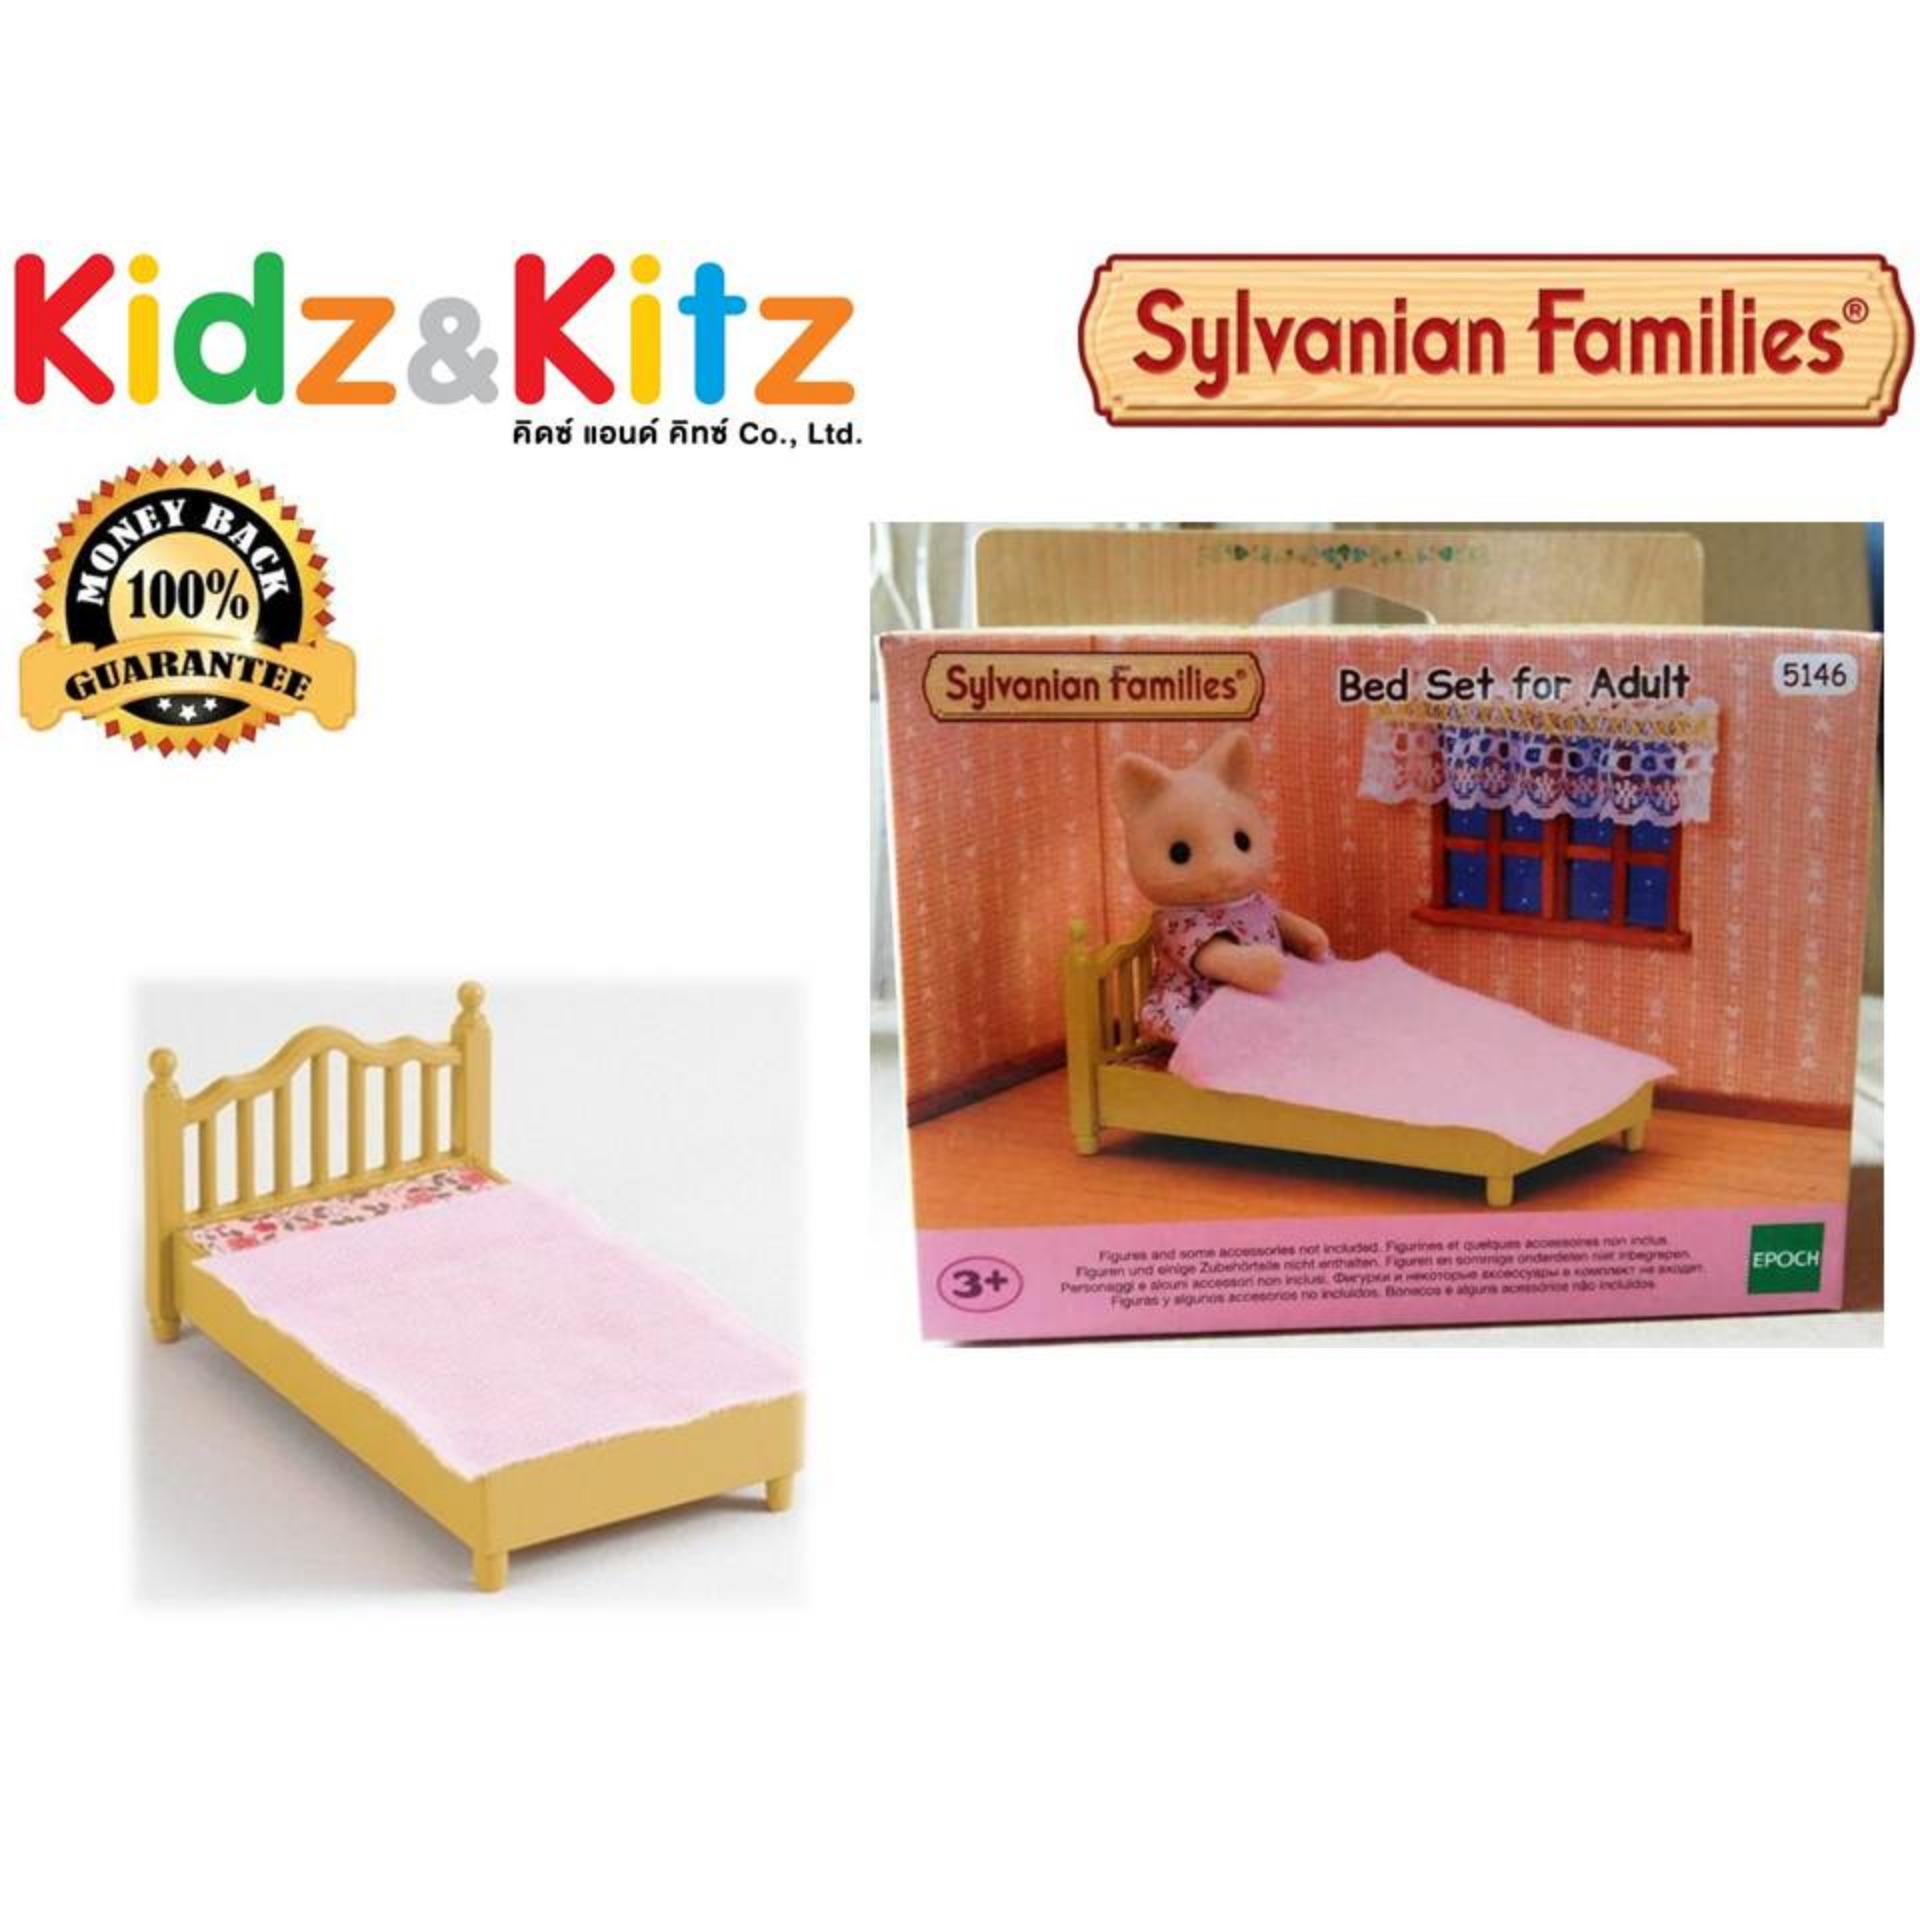 Sylvanian Families Bed Set For Adult / ซิลวาเนียน แฟมิลี่ ชุดเตียงสำหรับผู้ใหญ่ (EBS)